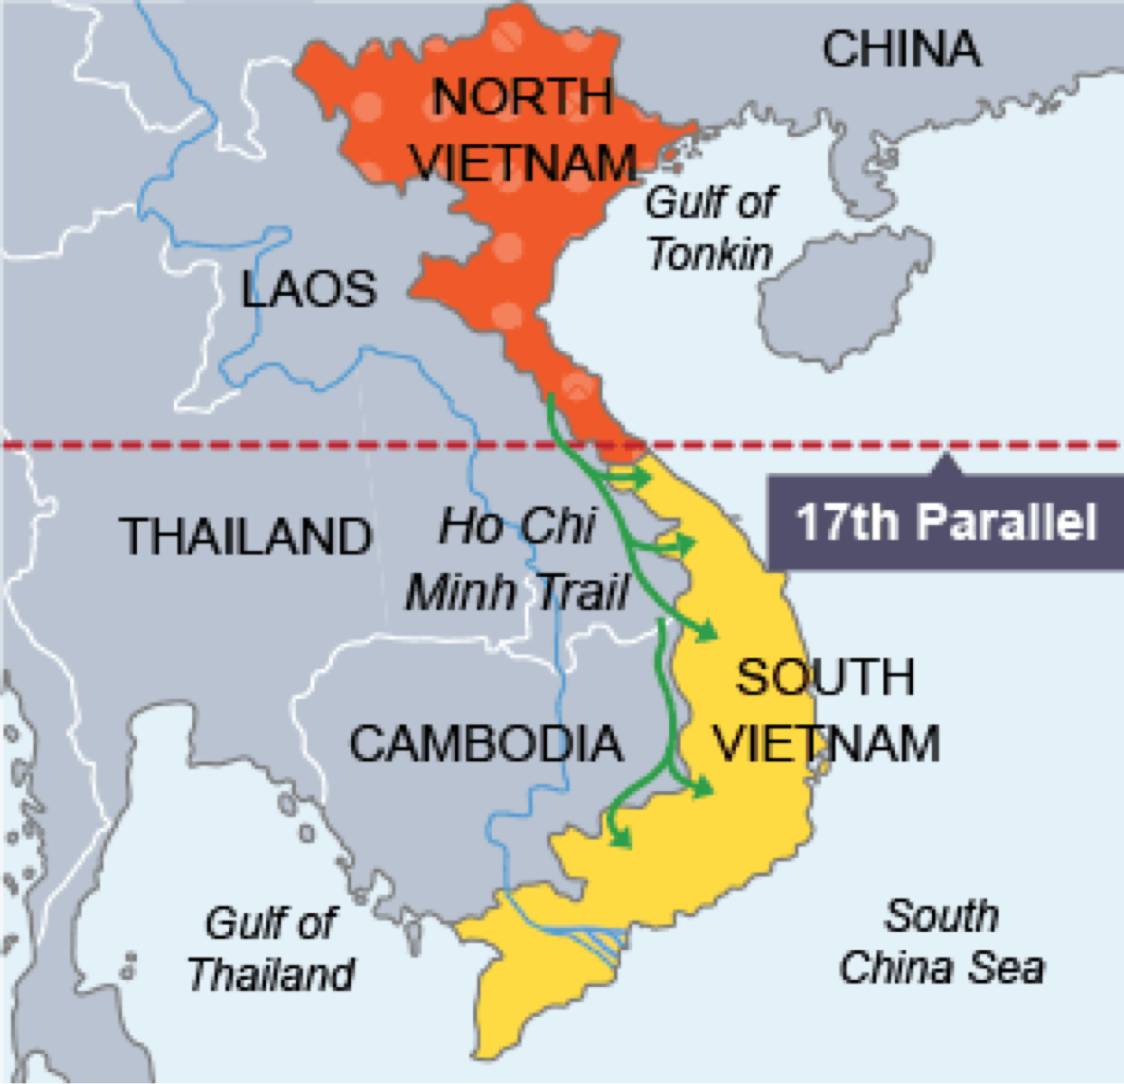 Климат и сезоны для посещения вьетнама